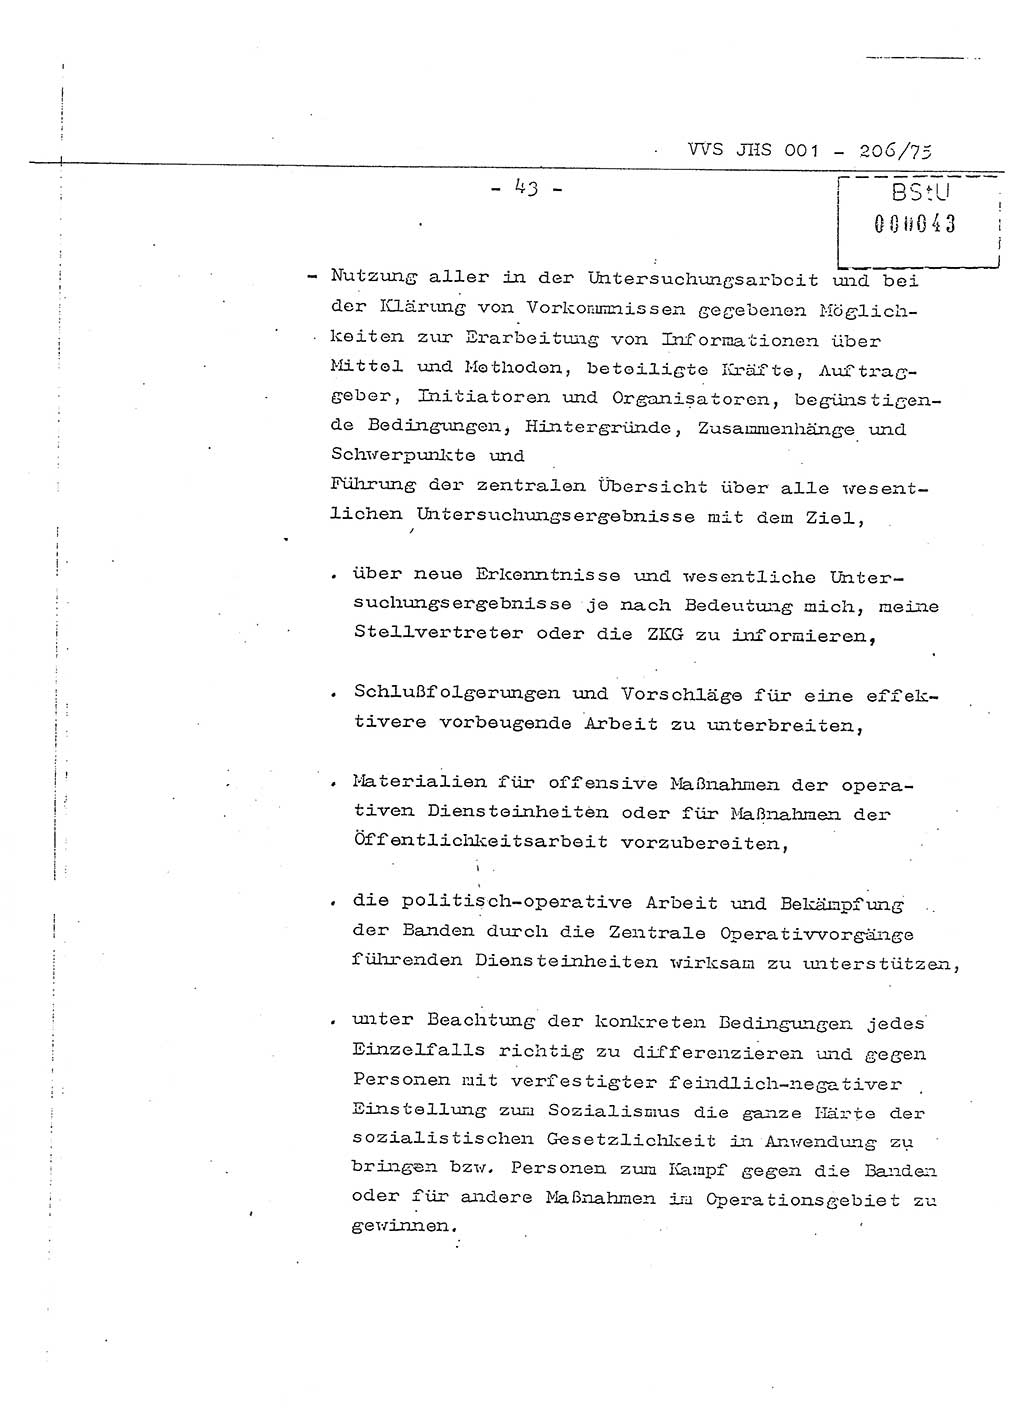 Dissertation Generalmajor Manfred Hummitzsch (Leiter der BV Leipzig), Generalmajor Heinz Fiedler (HA Ⅵ), Oberst Rolf Fister (HA Ⅸ), Ministerium für Staatssicherheit (MfS) [Deutsche Demokratische Republik (DDR)], Juristische Hochschule (JHS), Vertrauliche Verschlußsache (VVS) 001-206/75, Potsdam 1975, Seite 43 (Diss. MfS DDR JHS VVS 001-206/75 1975, S. 43)